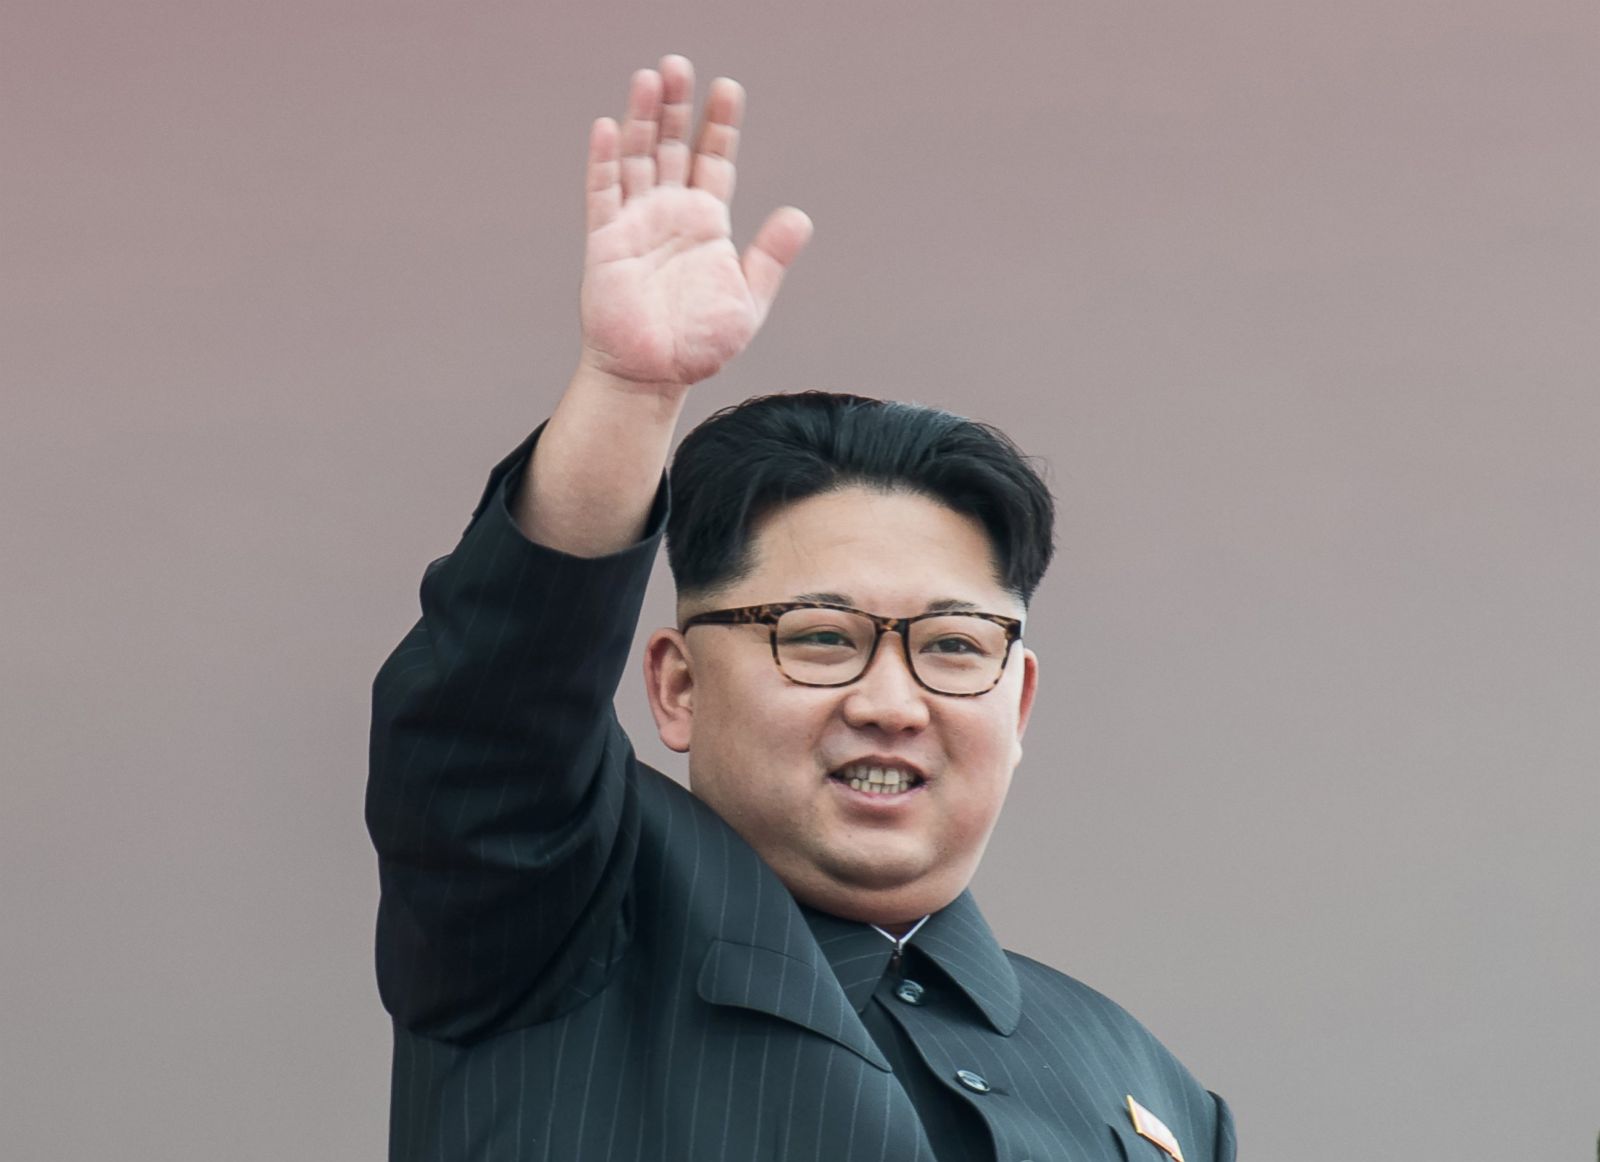 زعيم كوريا الشمالية يصف ترامب بـ"العجوز المجنون"